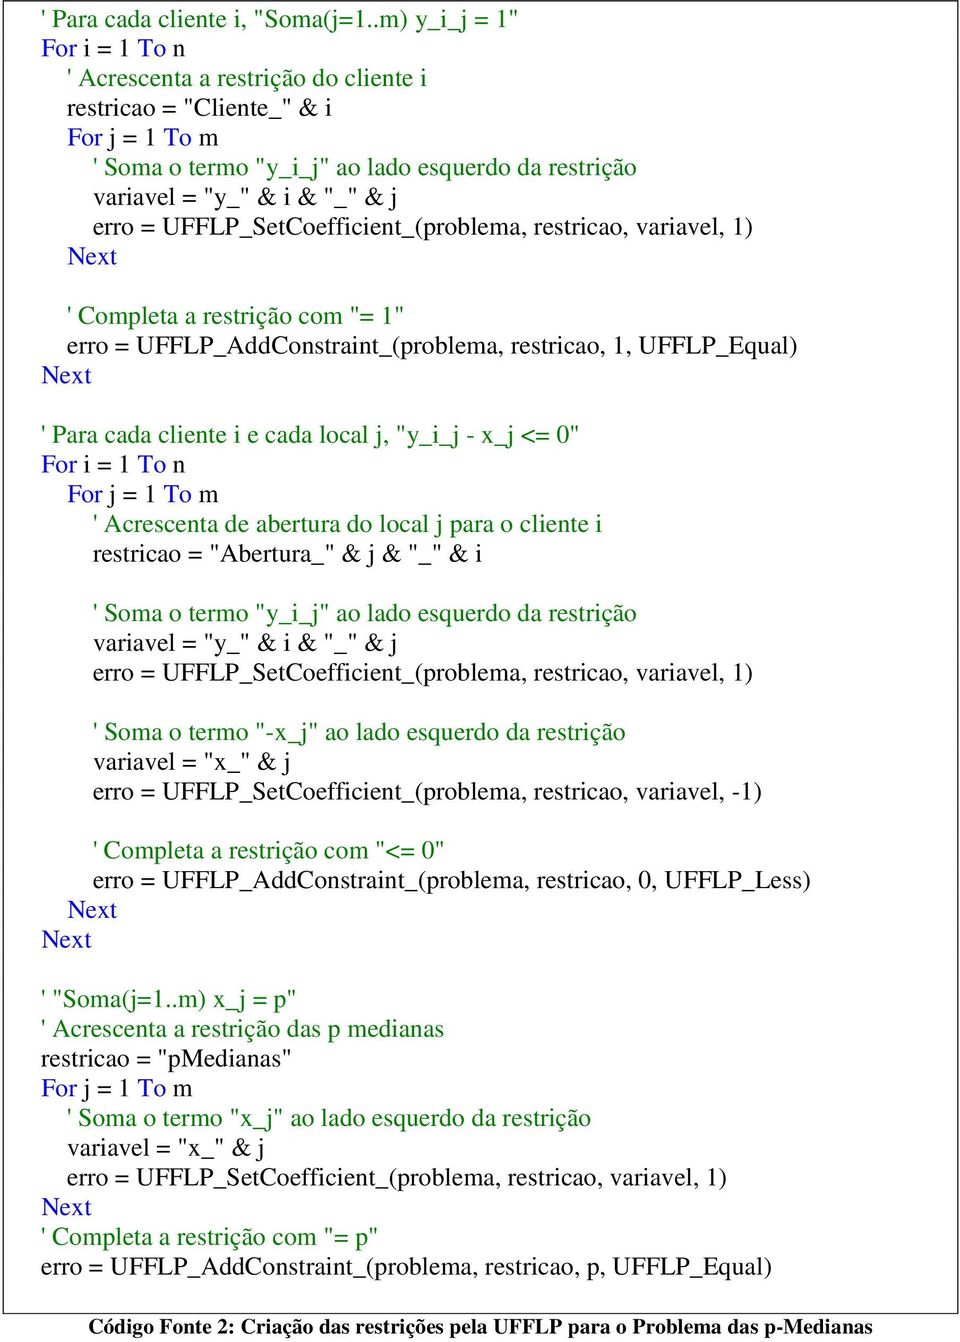 UFFLP_SetCoefficient_(problema, restricao, variavel, 1) ' Completa a restrição com "= 1" erro = UFFLP_AddConstraint_(problema, restricao, 1, UFFLP_Equal) ' Para cada cliente i e cada local j, "y_i_j